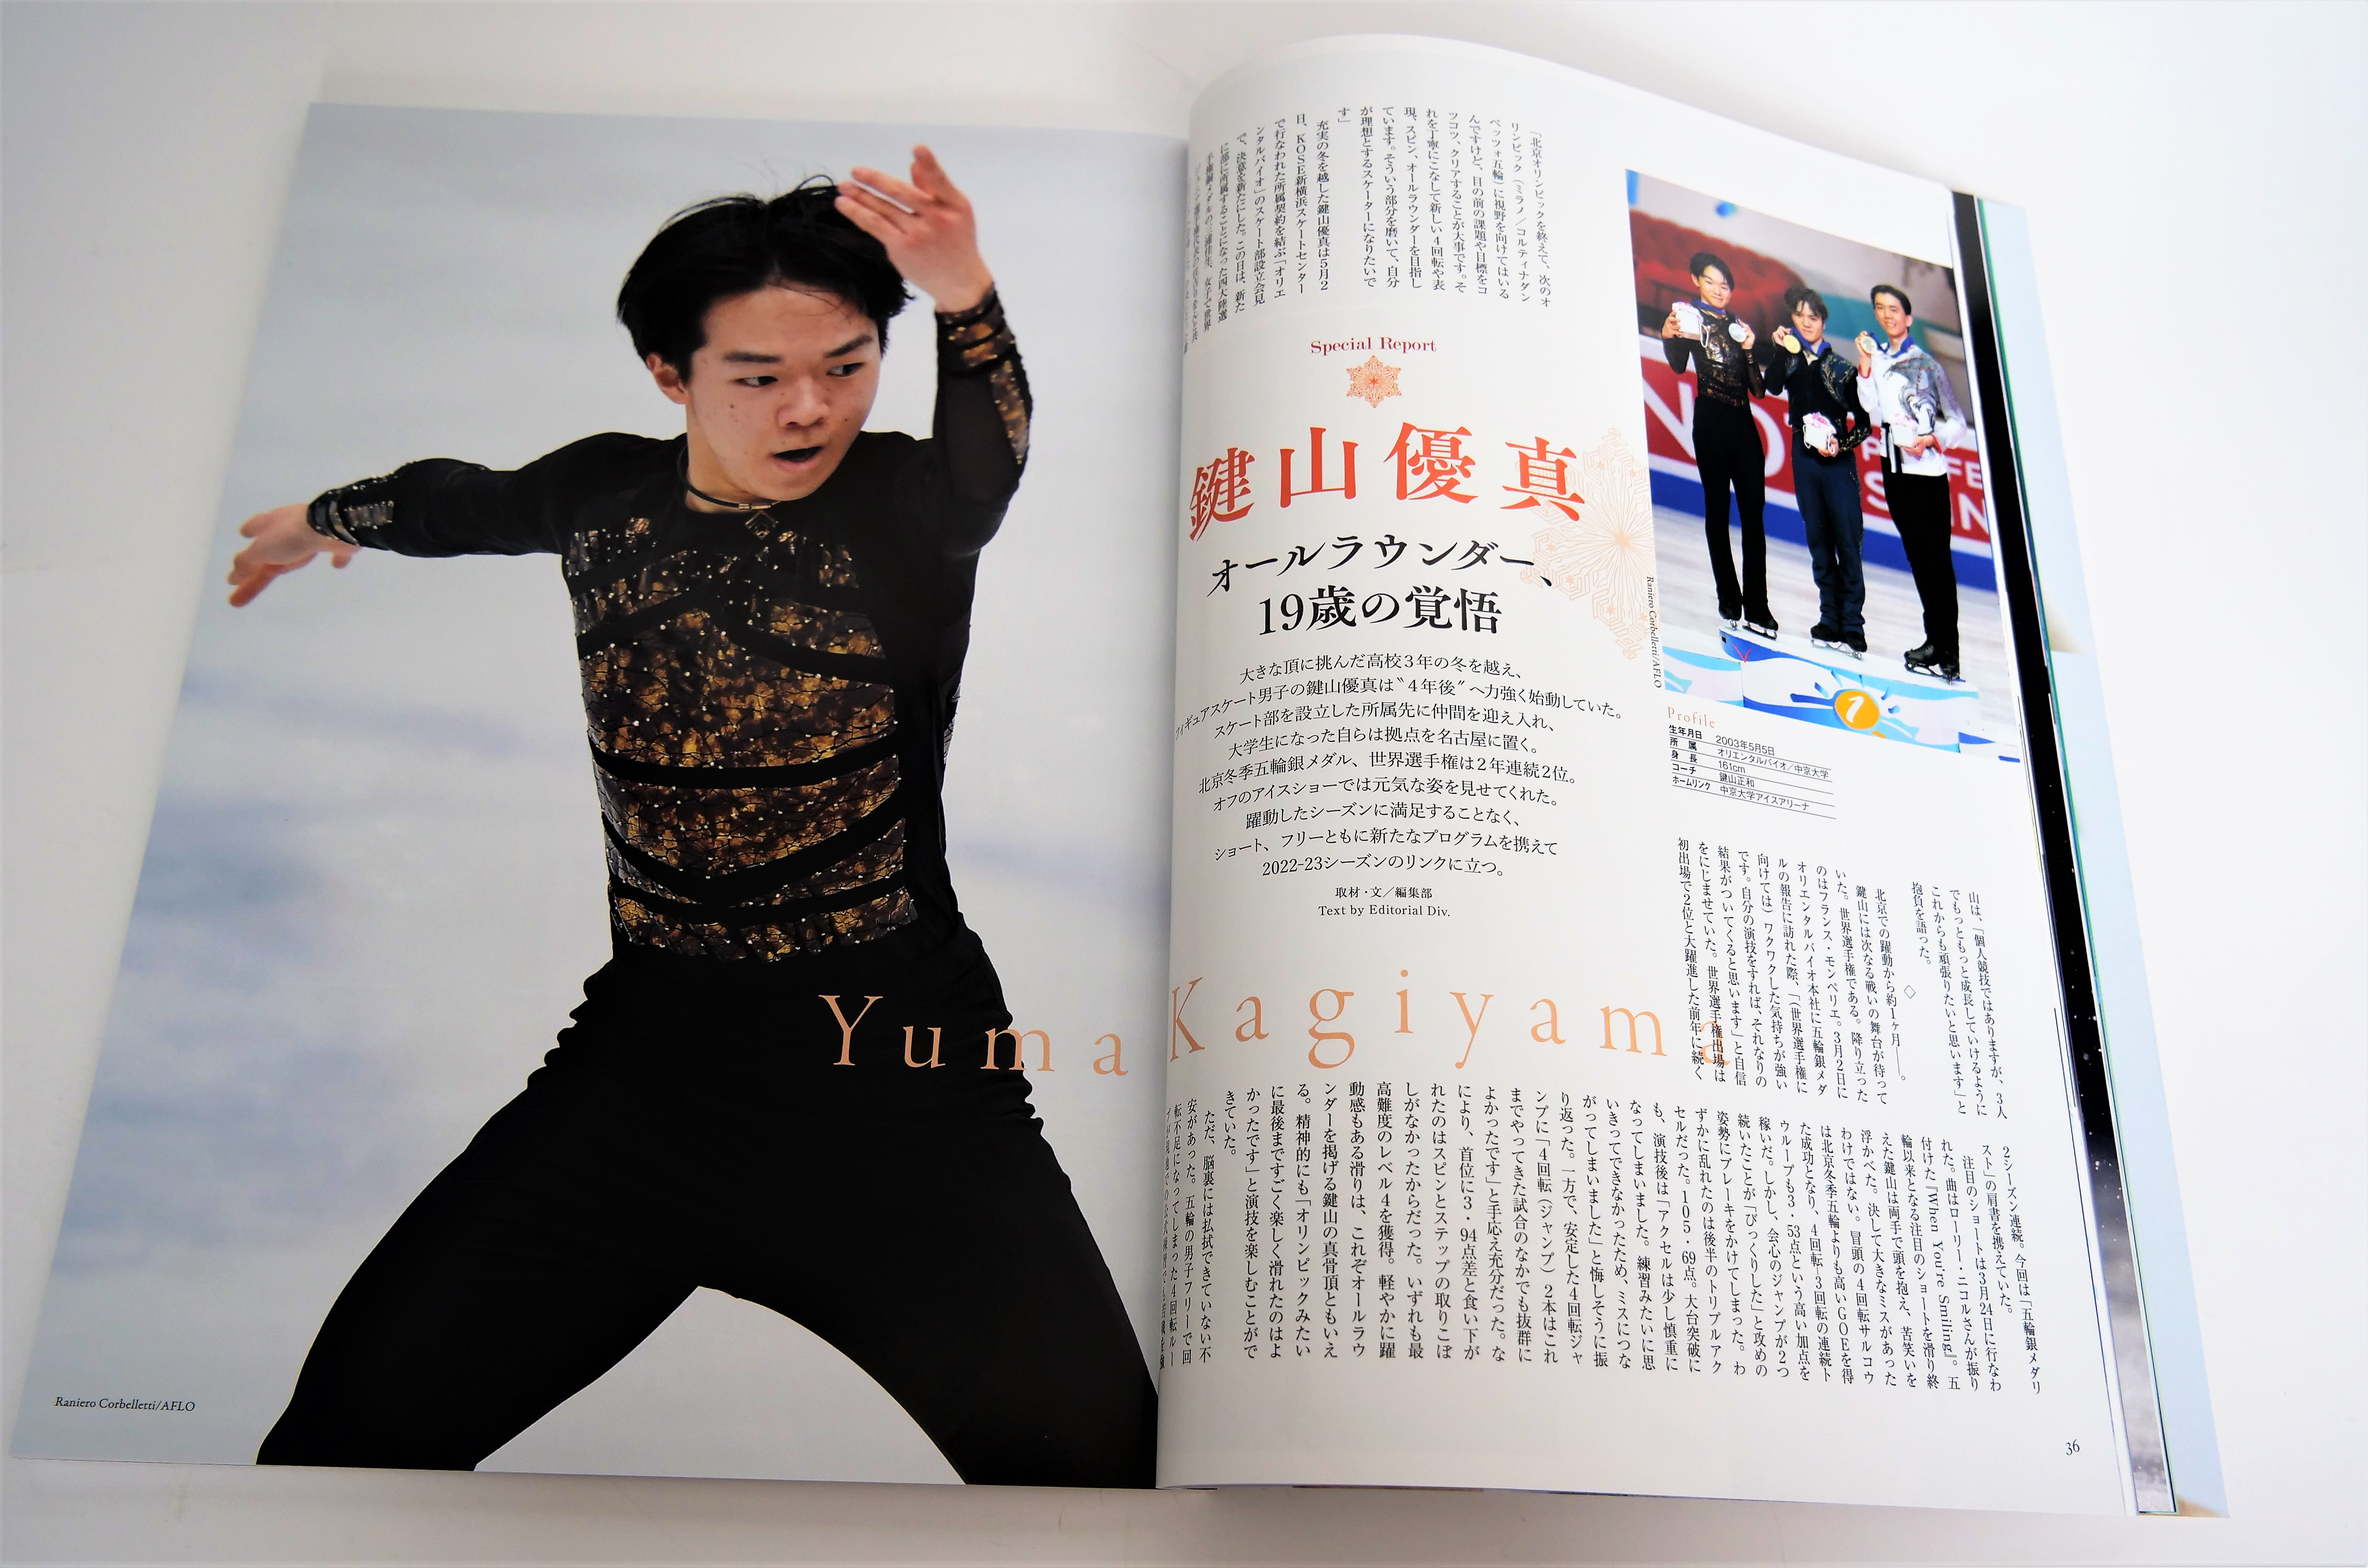 フィギュアスケート選手の表情、躍動感、美しさを伝える印刷 - 東京印 